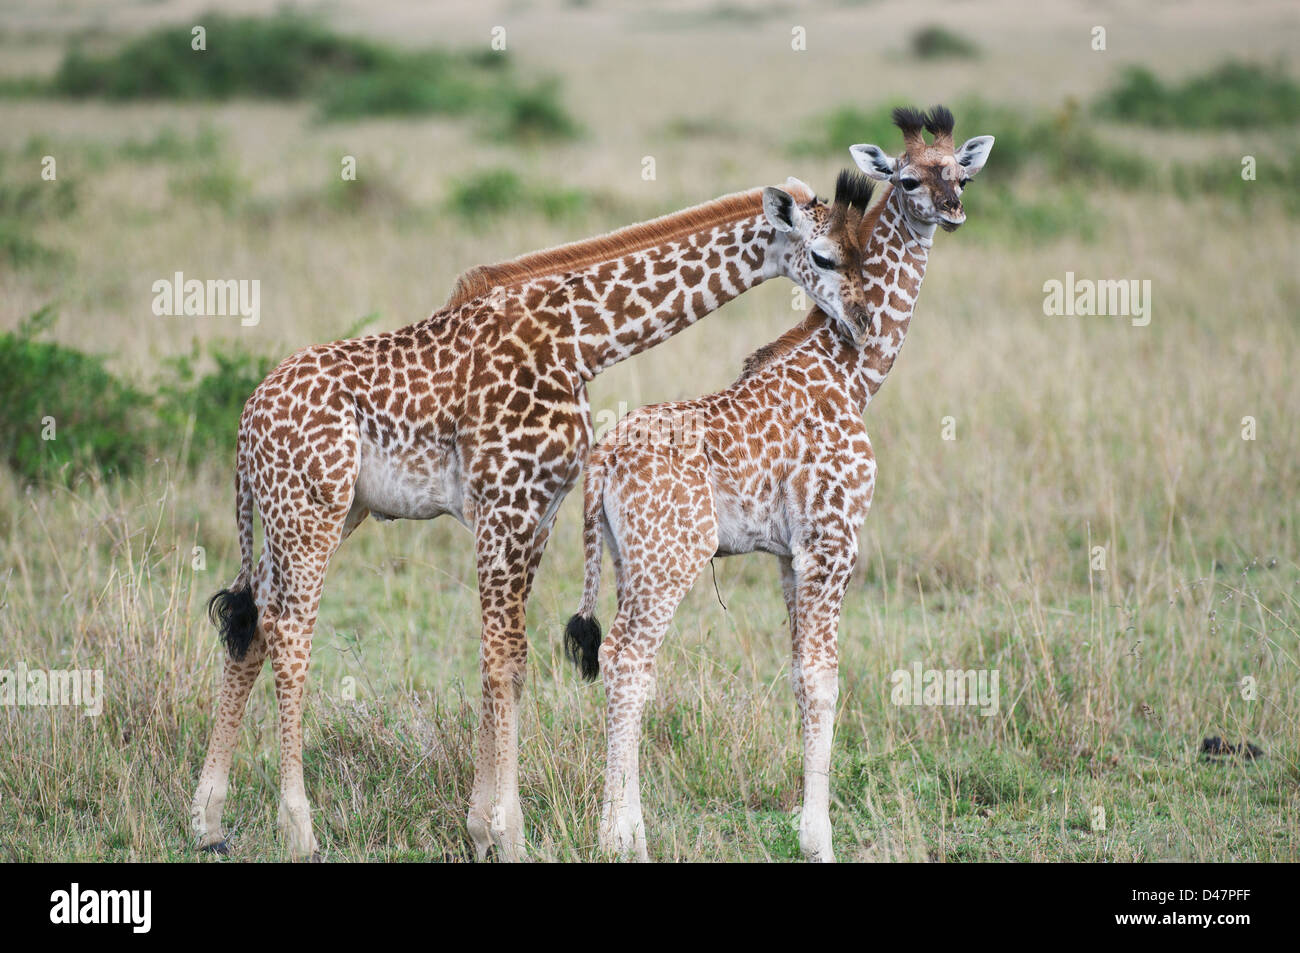 Juvenile giraffe on the Masai Mara grasslands, Kenya Stock Photo